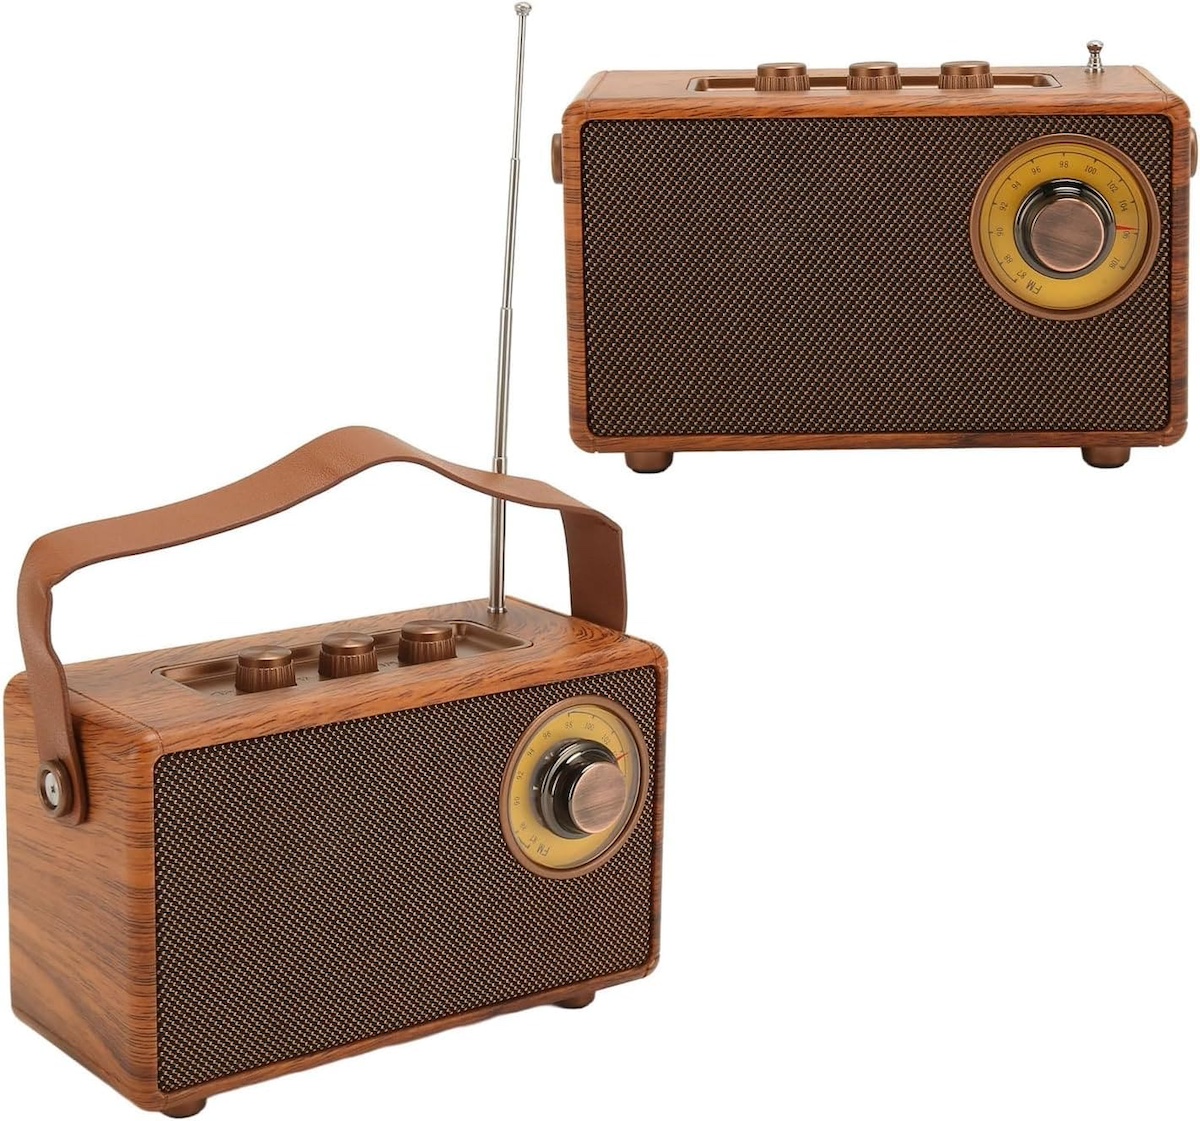 ラジオ ミニ 小型 レトロ ヴィンテージ 木製スタイル